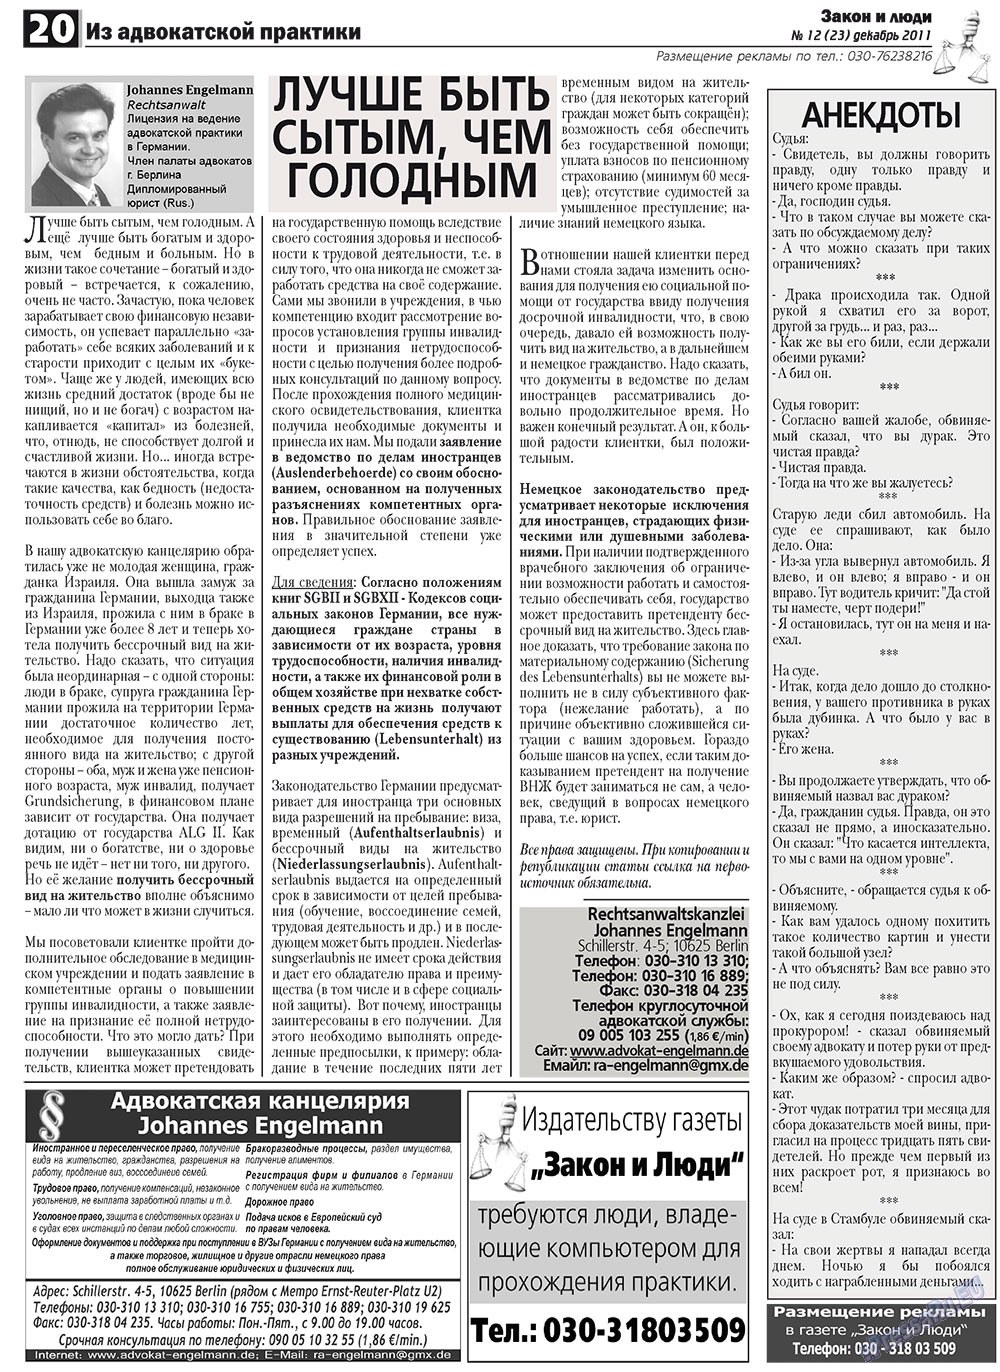 Закон и люди, газета. 2011 №12 стр.20